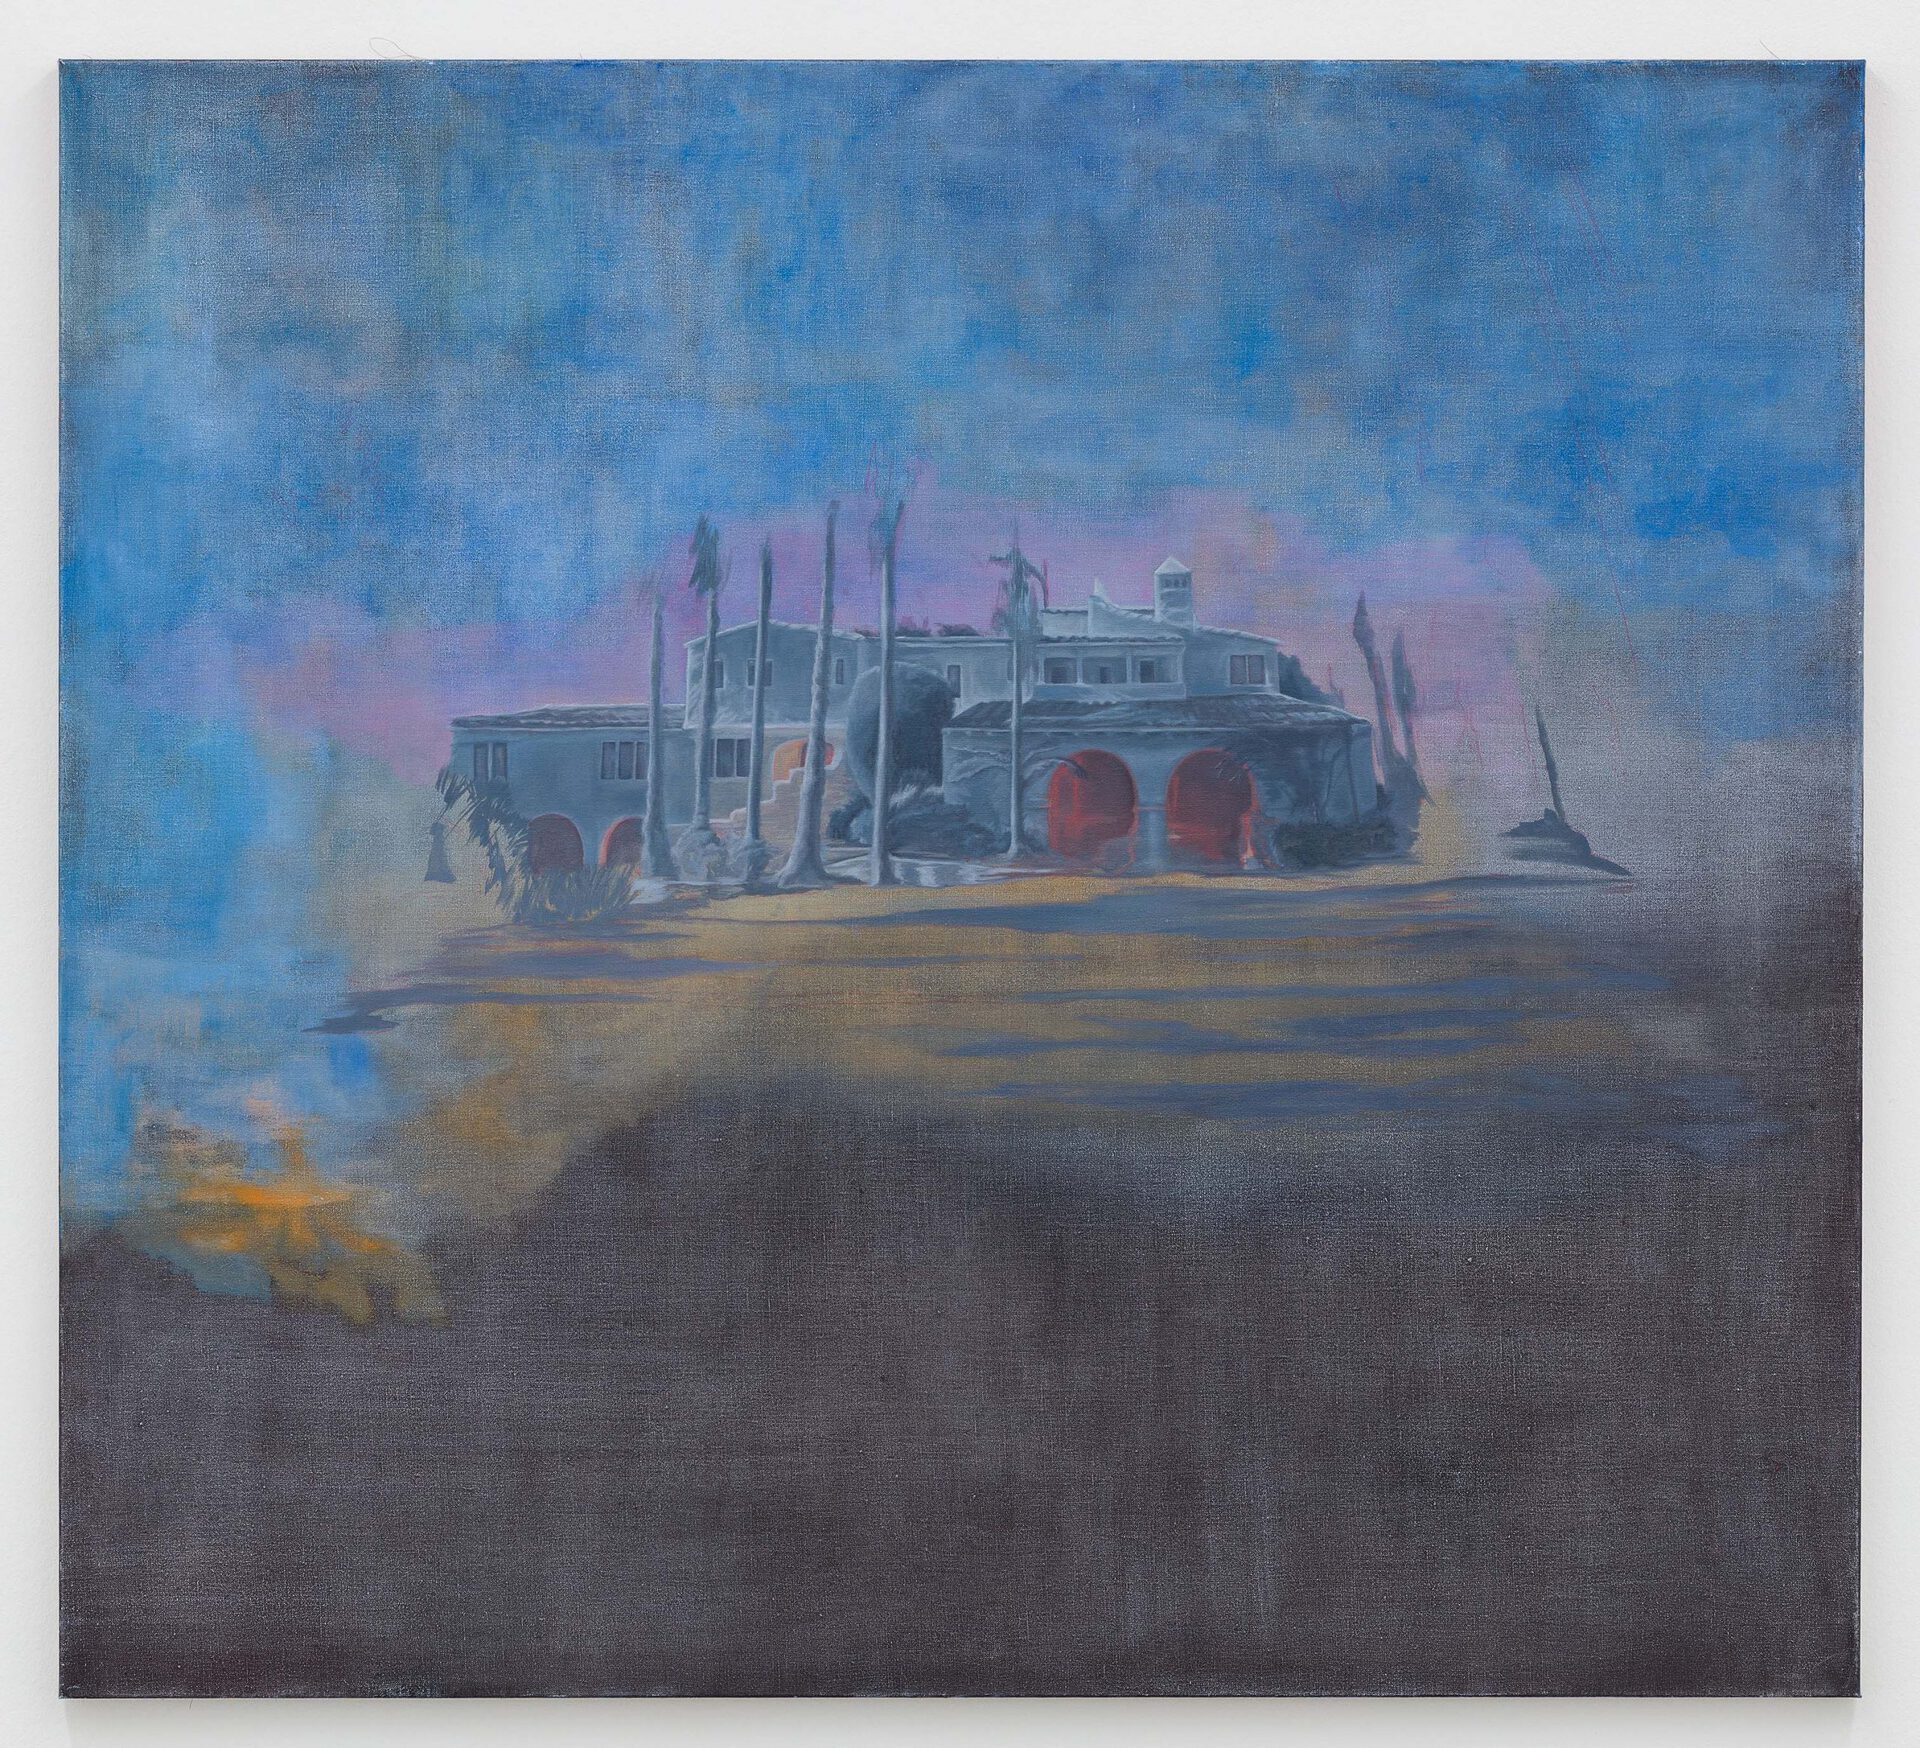 Melanie Ebenhoch, The Mansion, 2020, oil on canvas 100 x 110 cm